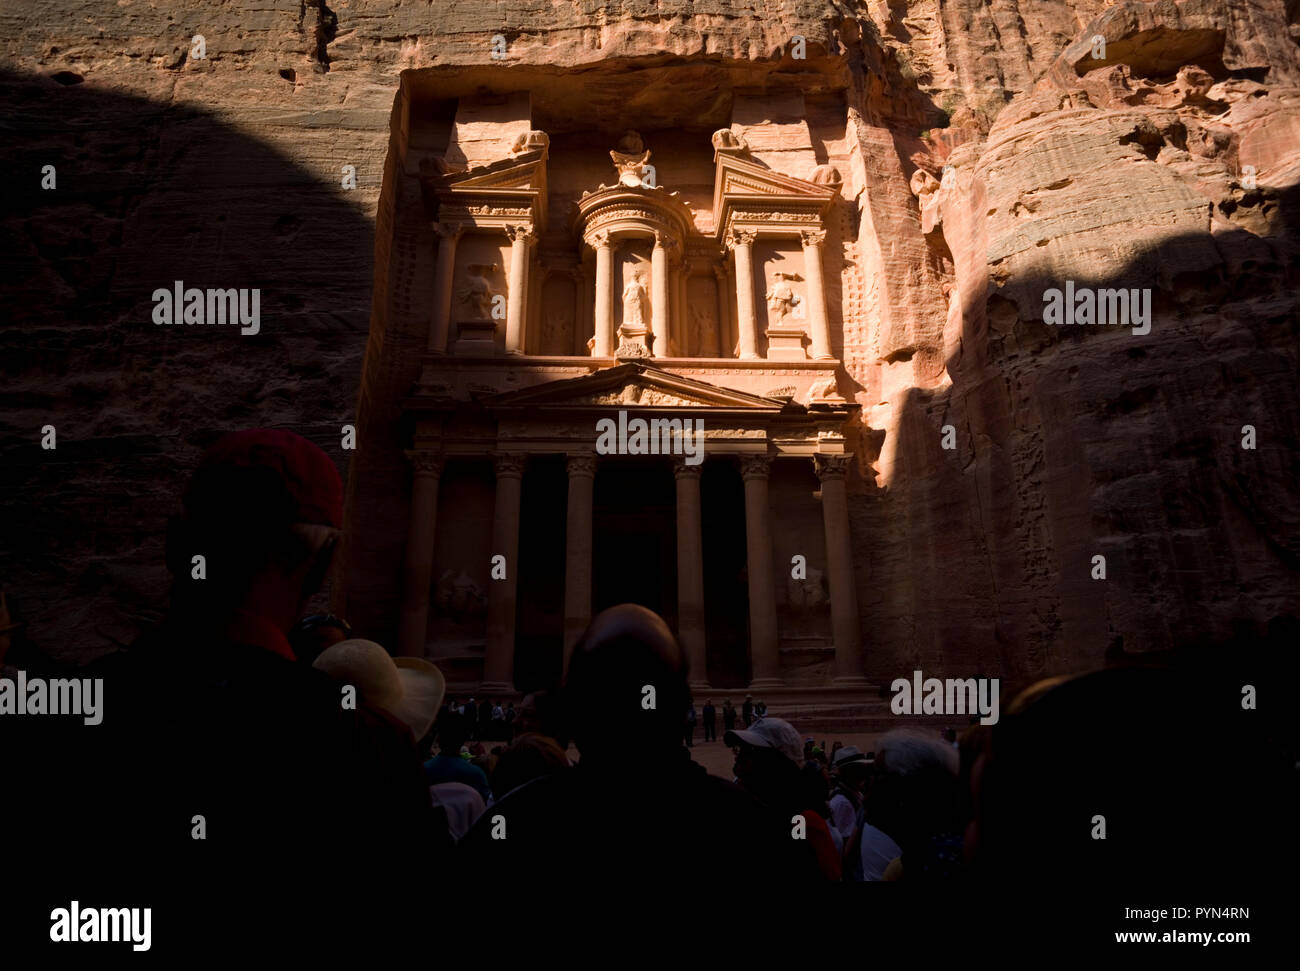 Bâtiments creusées dans la roche sont vus dans le parc archéologique de Petra, en Jordanie, le 24 octobre 2018. Banque D'Images